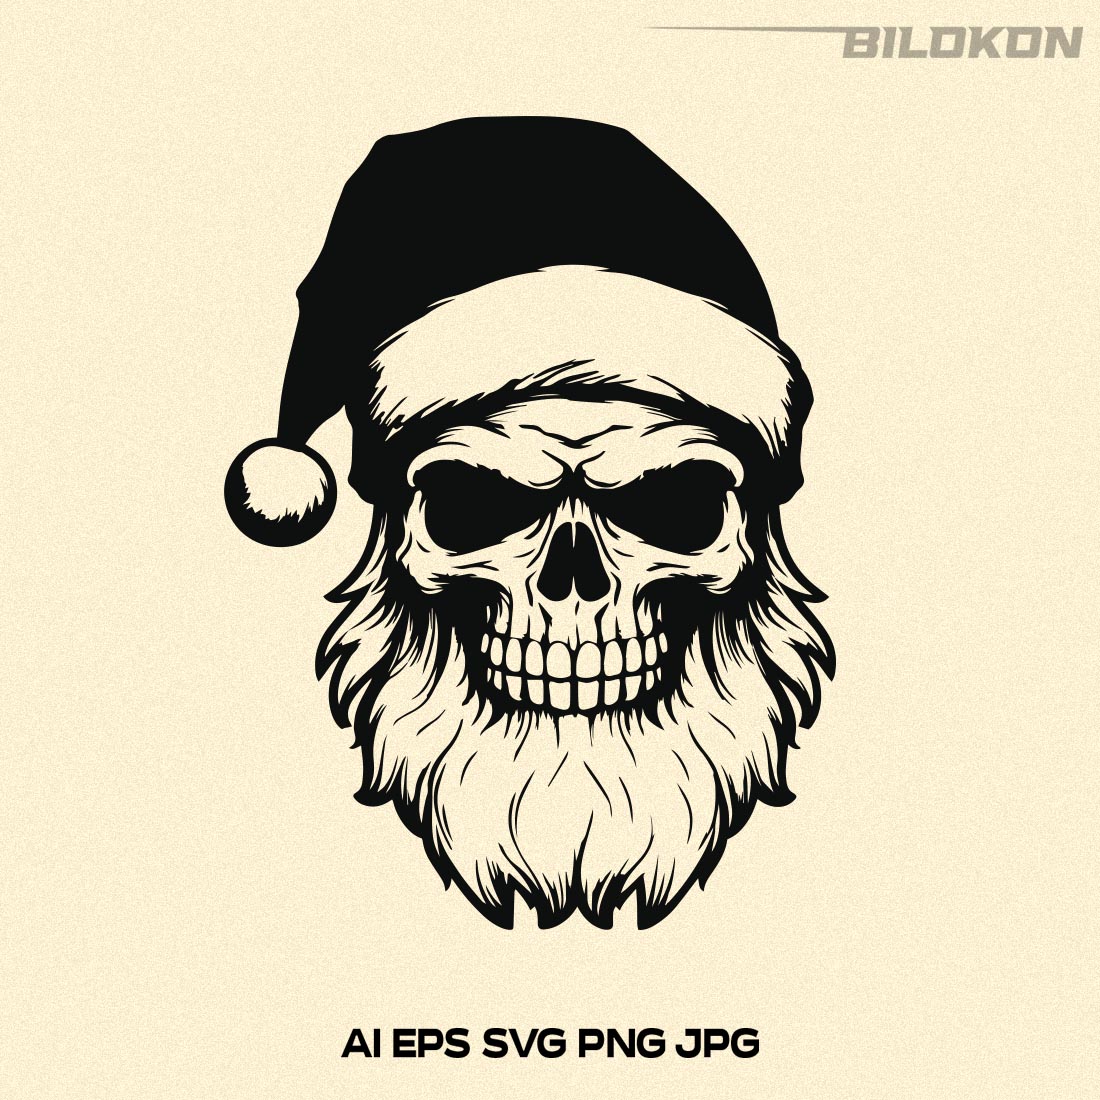 Santa Claus in Skull face, Skull in santa hat SVG Vector preview image.